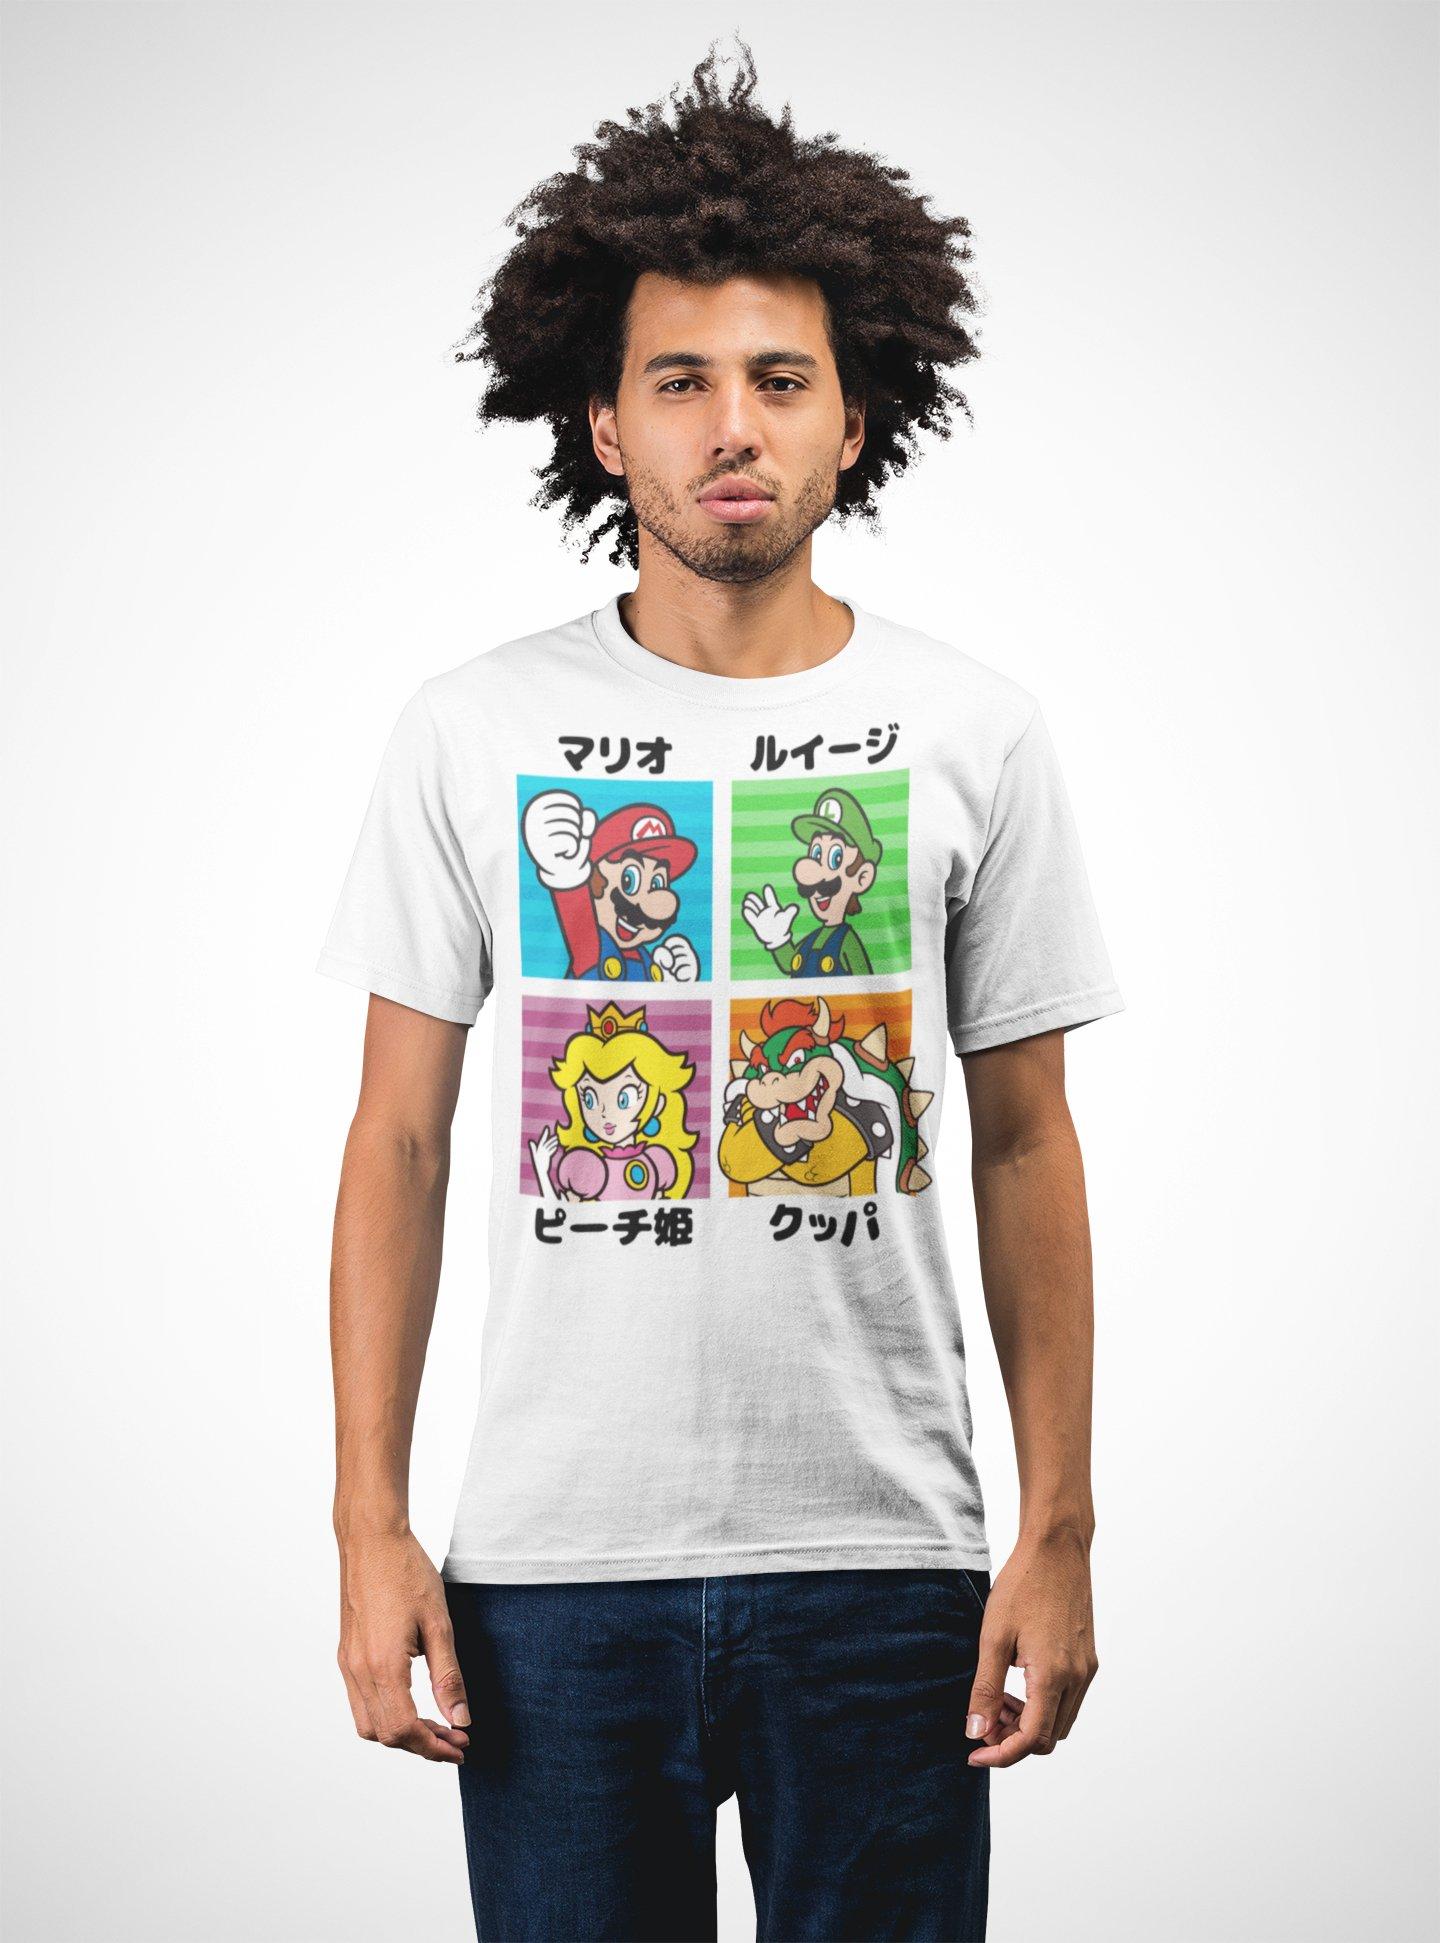 færdig Inhalere elite Geeknet Super Mario Characters Unisex Short Sleeve T-Shirt GameStop  Exclusive | GameStop